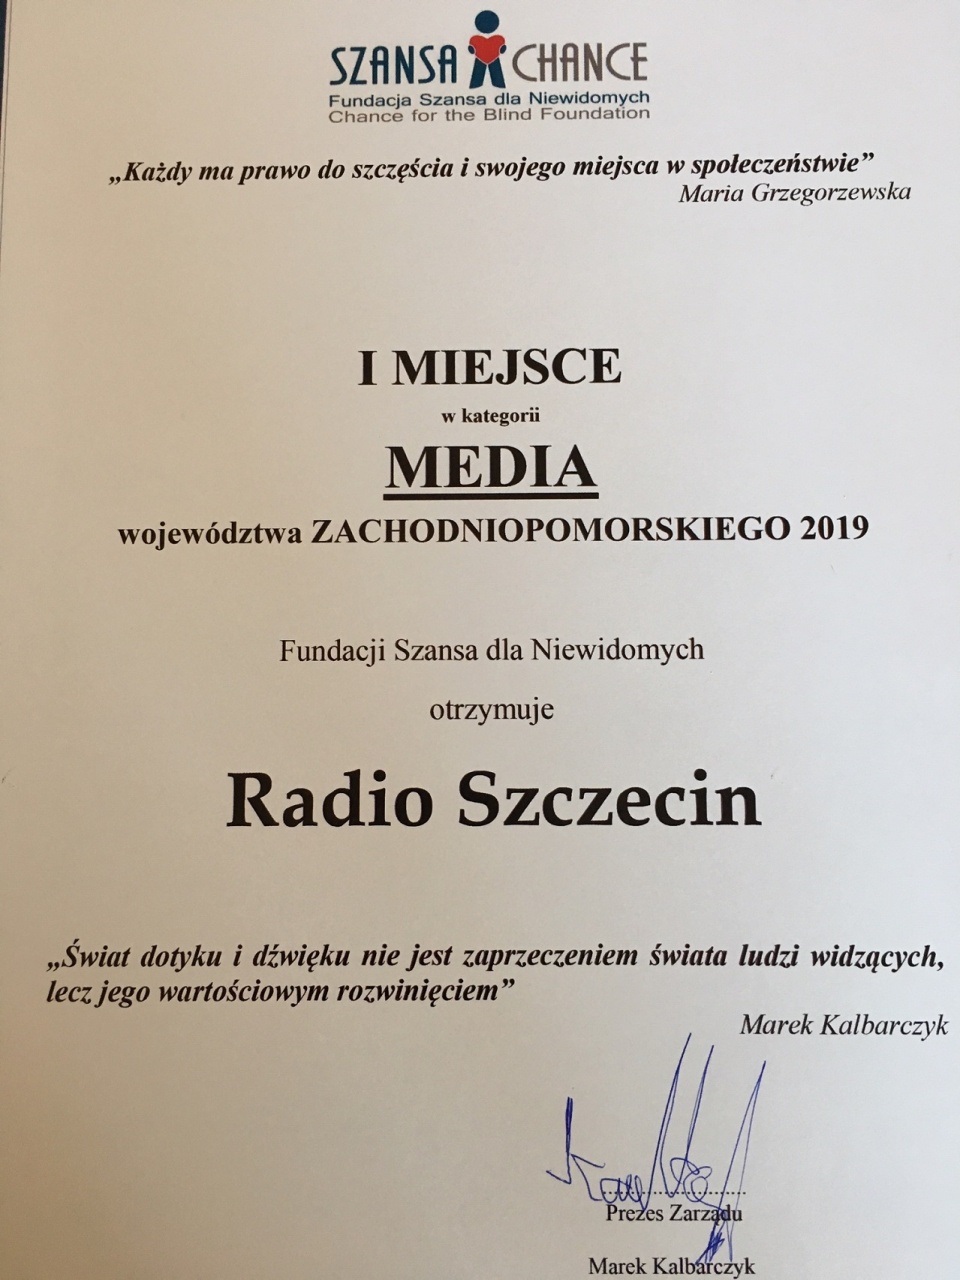 Dyplom uznania dla PR Szczecin